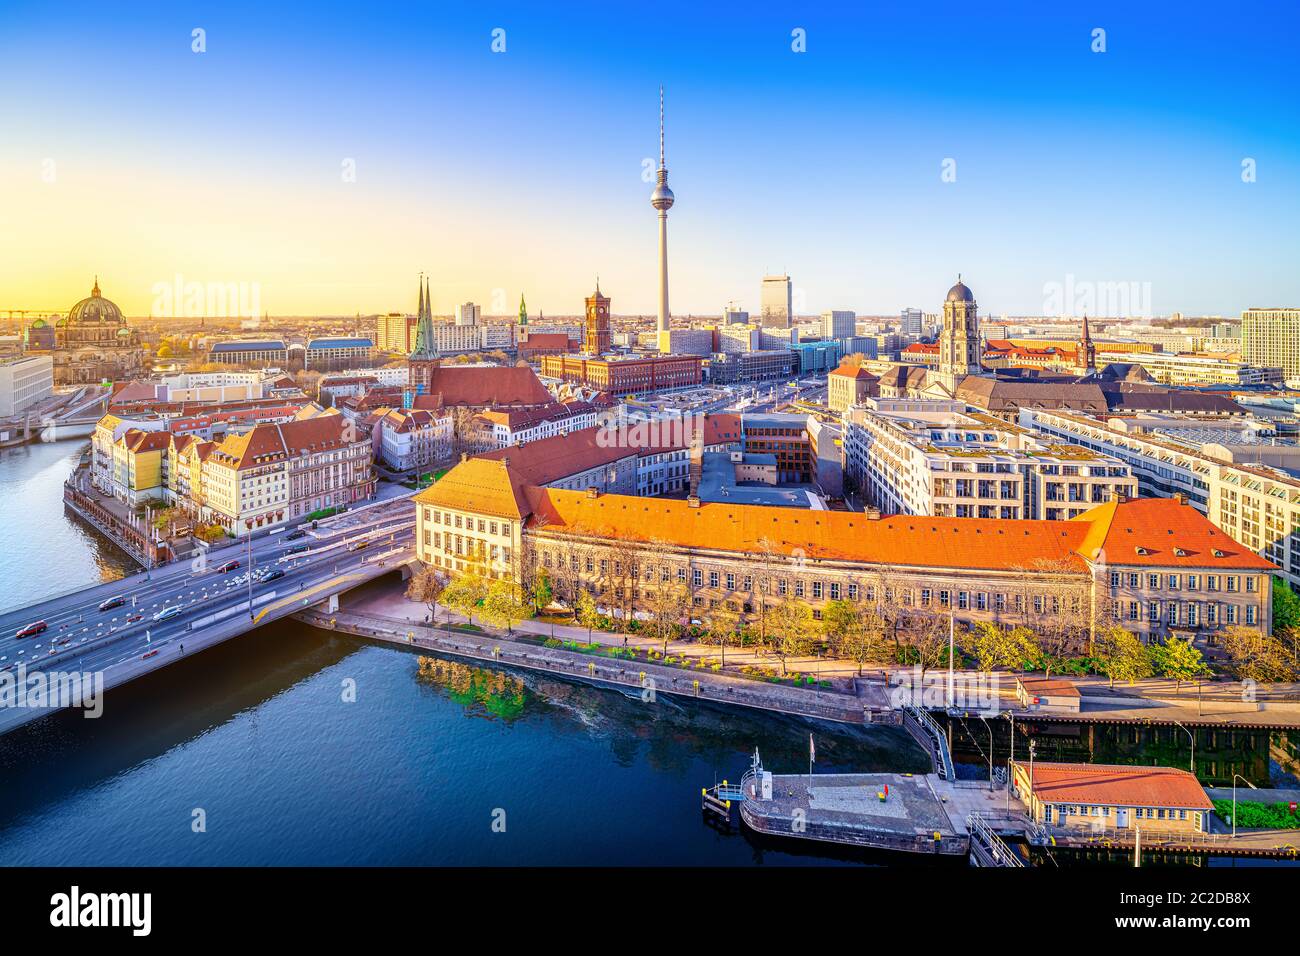 vue panoramique au centre de berlin, allemagne Banque D'Images